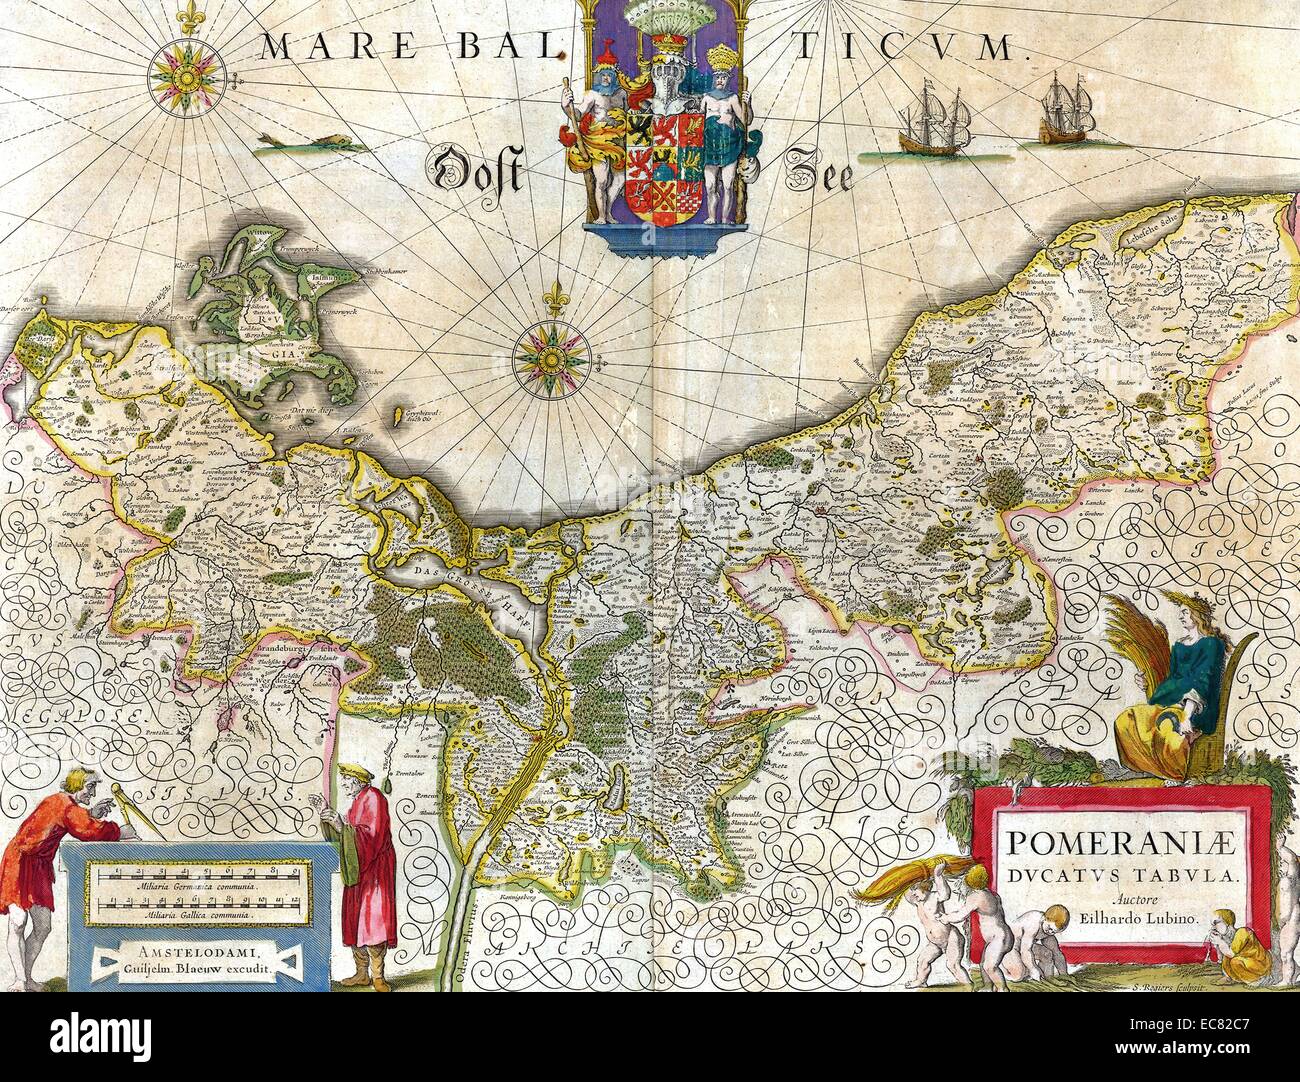 Mapa del histórico ducado de Pomerania. El ducado de Pomerania siglo xii - 1637; fue un ducado de Pomerania, en la costa meridional del Mar Báltico, gobernada por los duques de la casa de Pomerania (grifos). Fecha 1635 Foto de stock